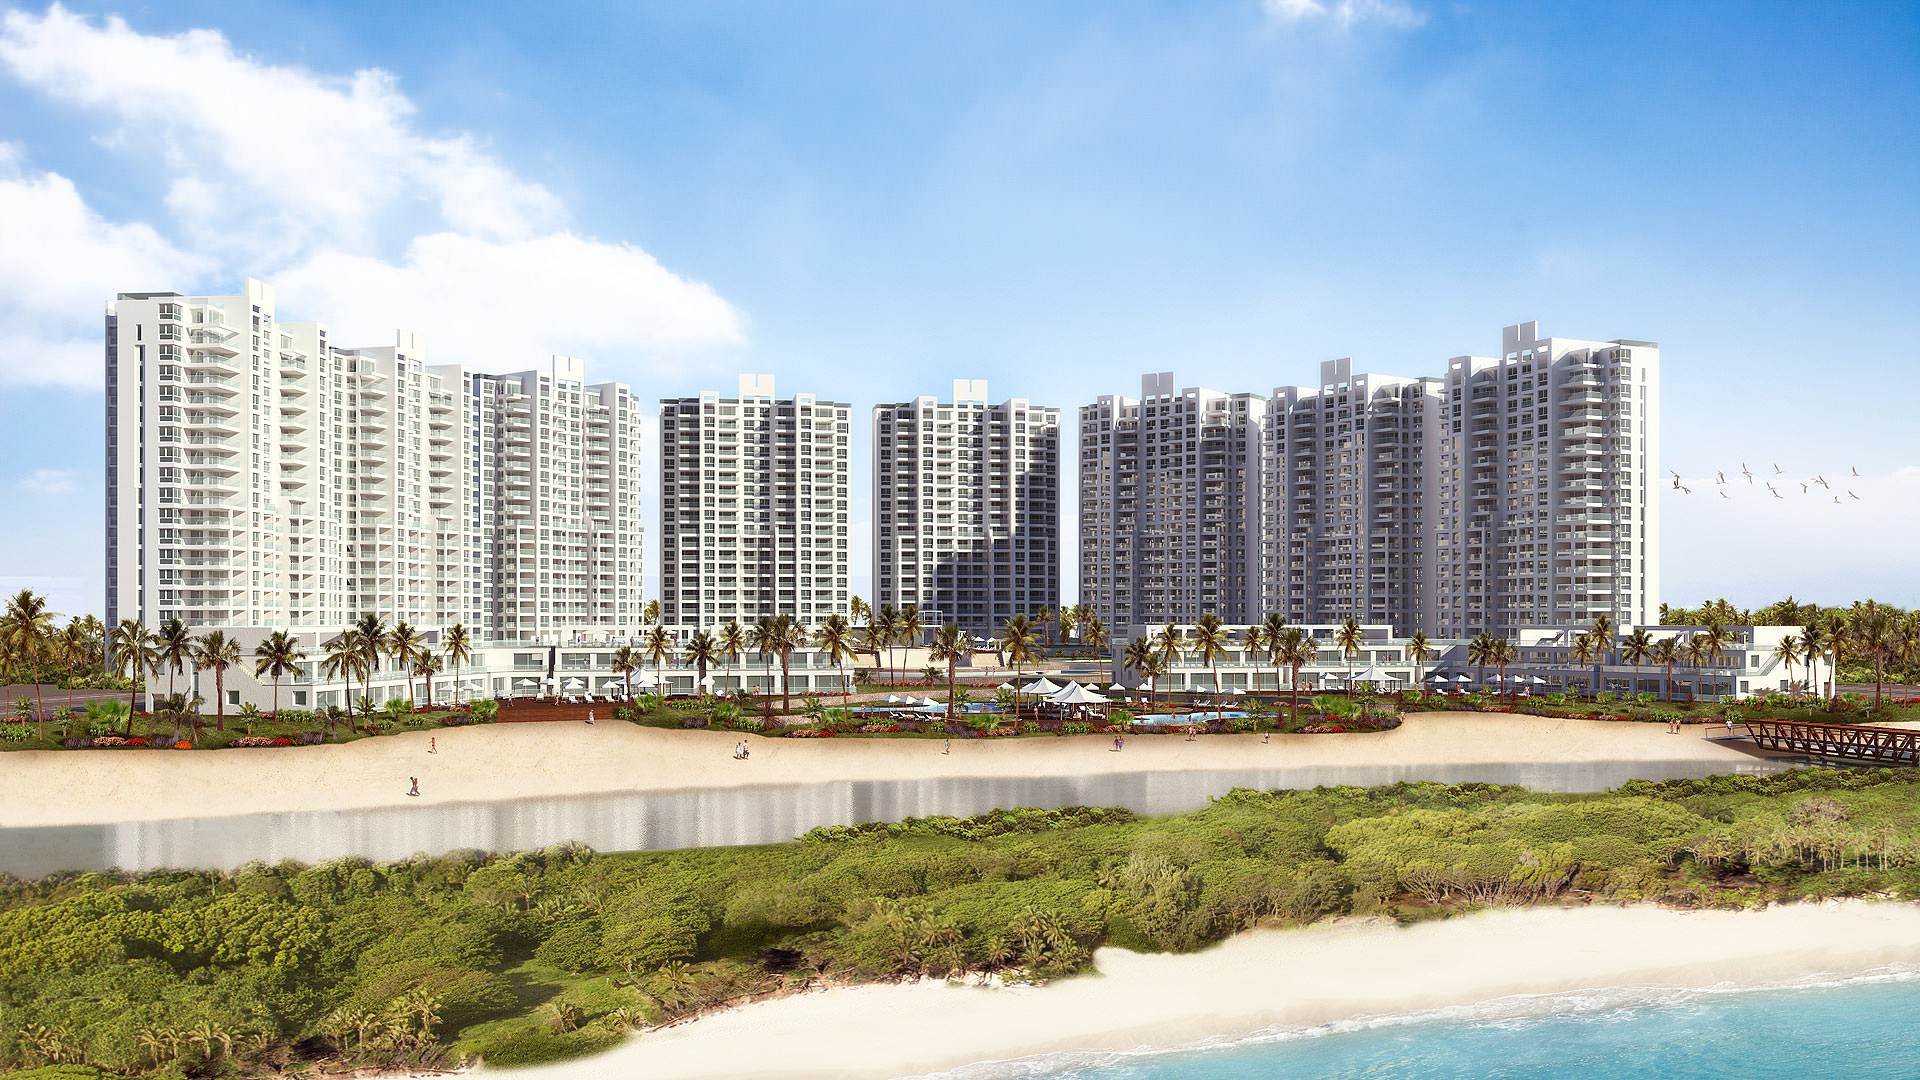 Resort de playa en Panama - Imagen 3D Exterior